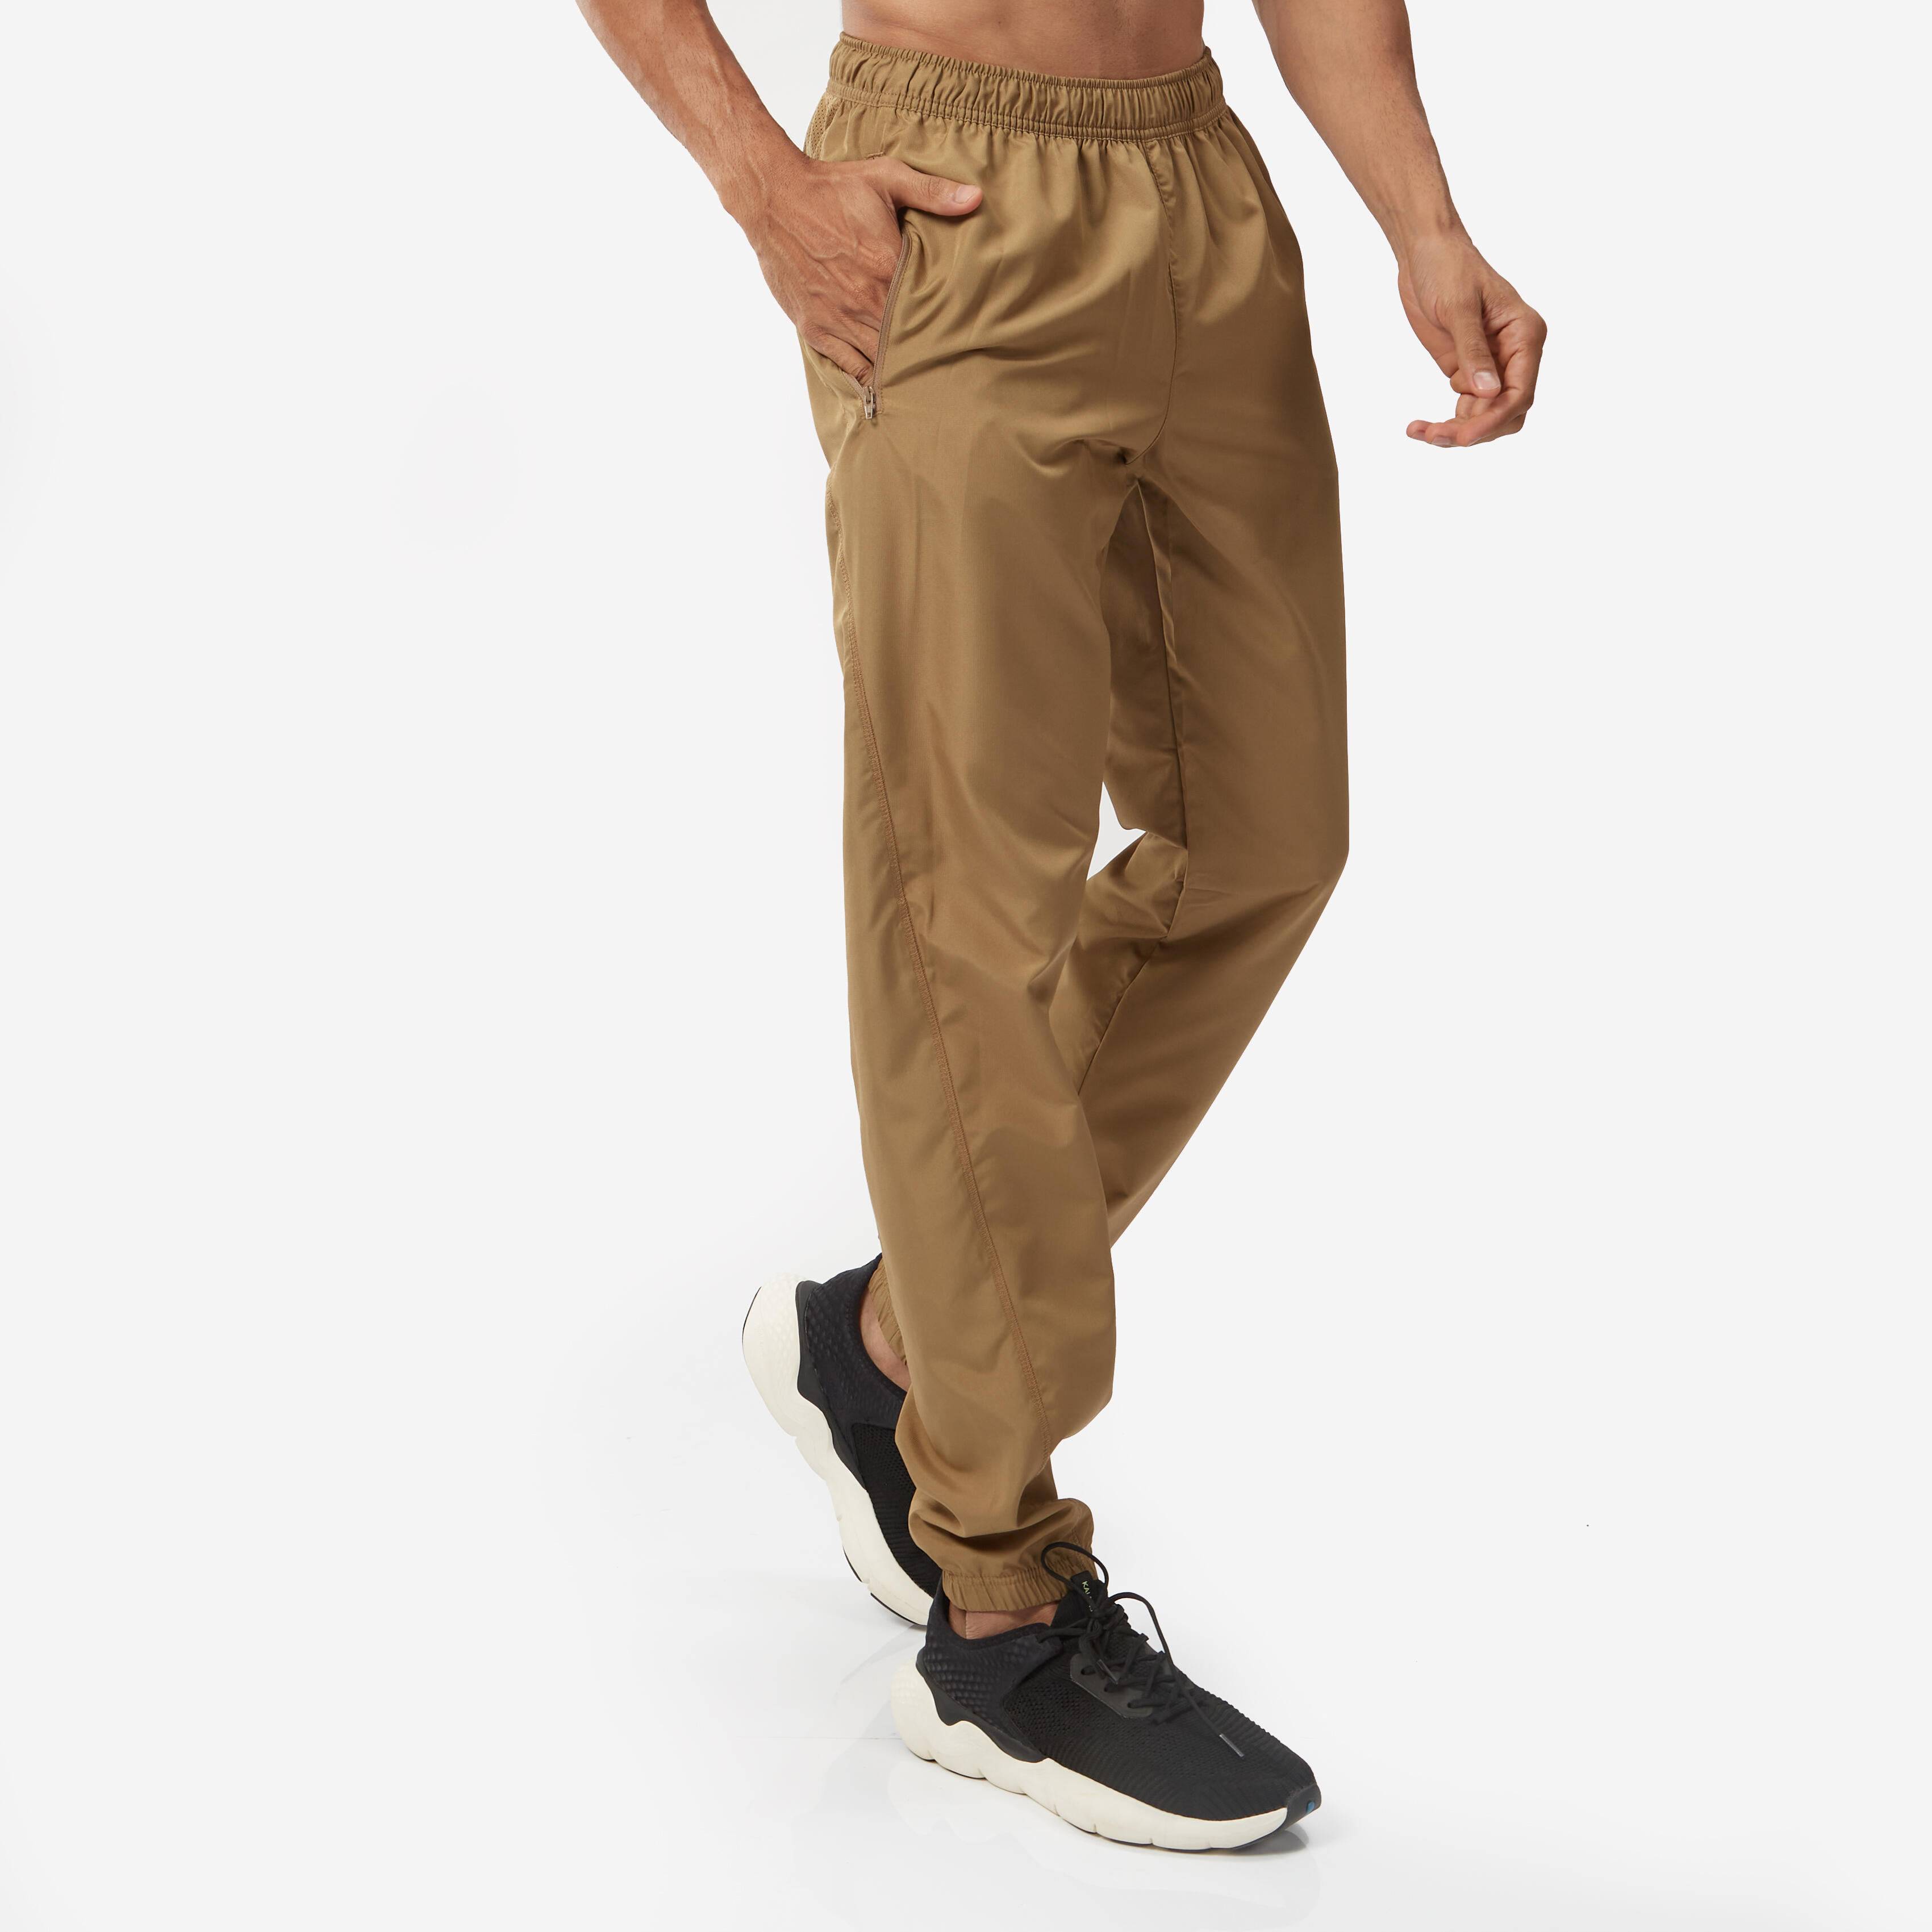 Gym pants for Men: कम्फर्टेबली व्यायाम करण्यासाठी मजबूत आणि लॉंग लास्टिंग  जिम पँट्स - long lasting gym pants with comfort for exercise jan2k23 -  Maharashtra Times